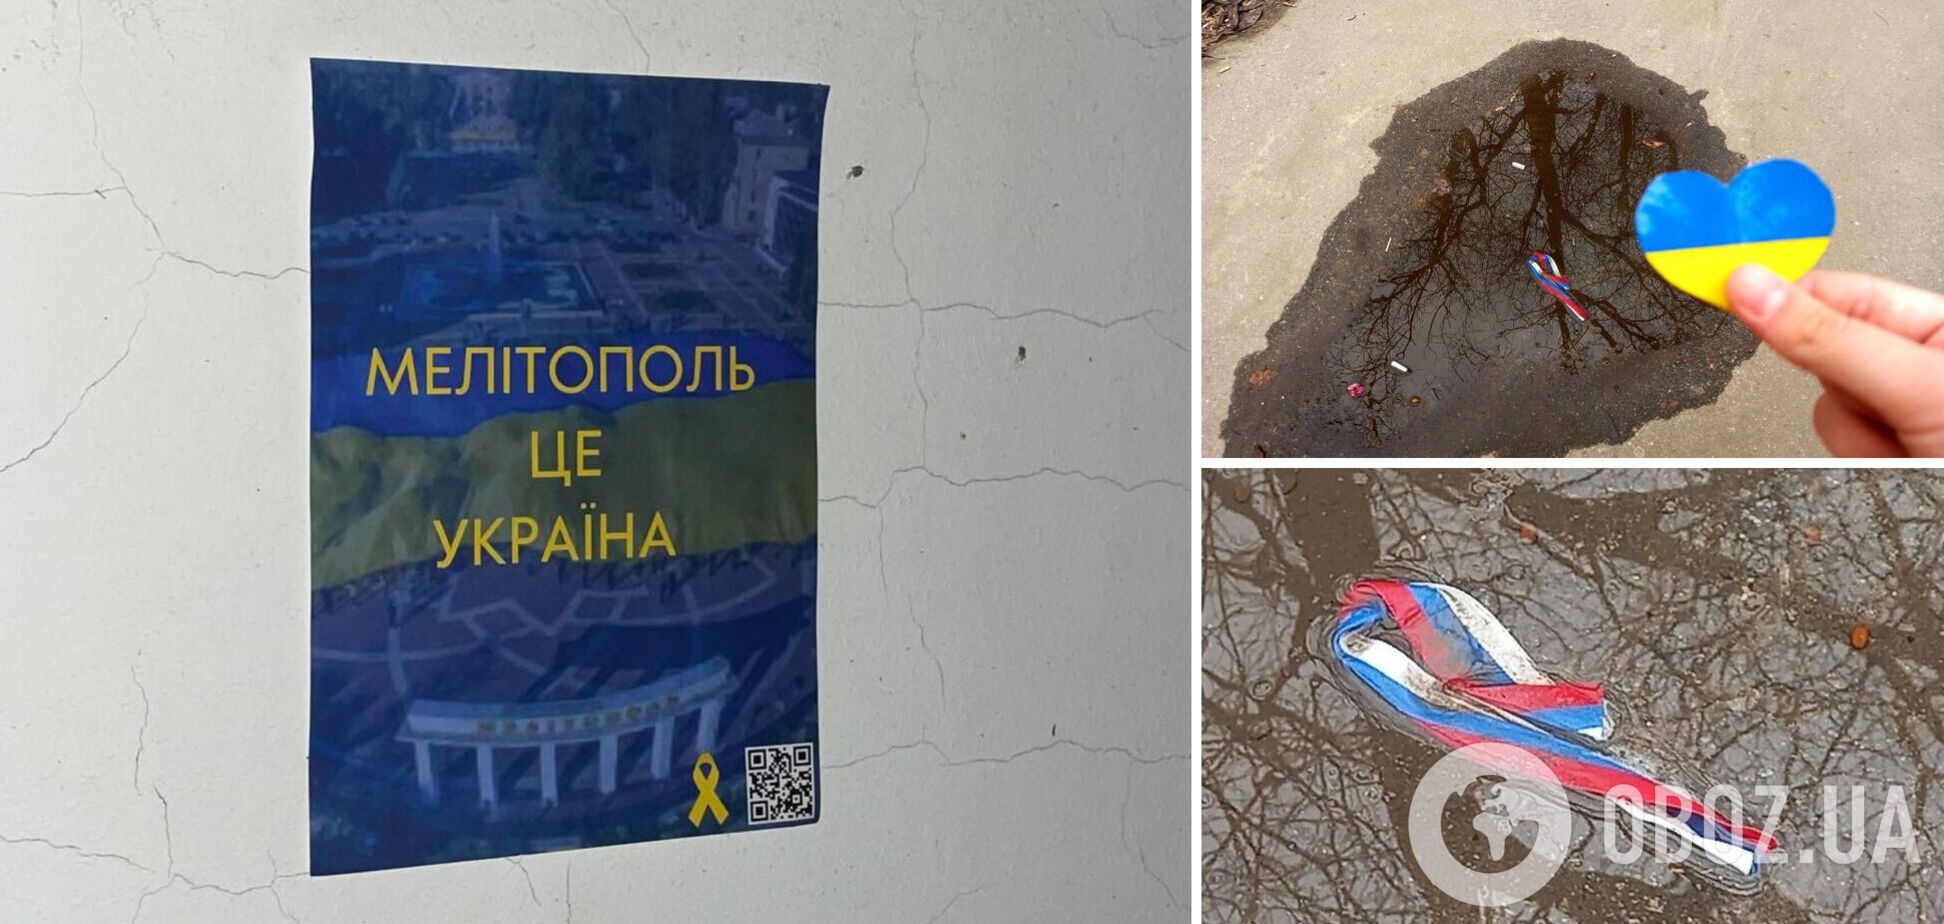 'Мелитополь – это Украина': в городе устроили новую патриотическую акцию и отправили на свалку триколоры. Фото